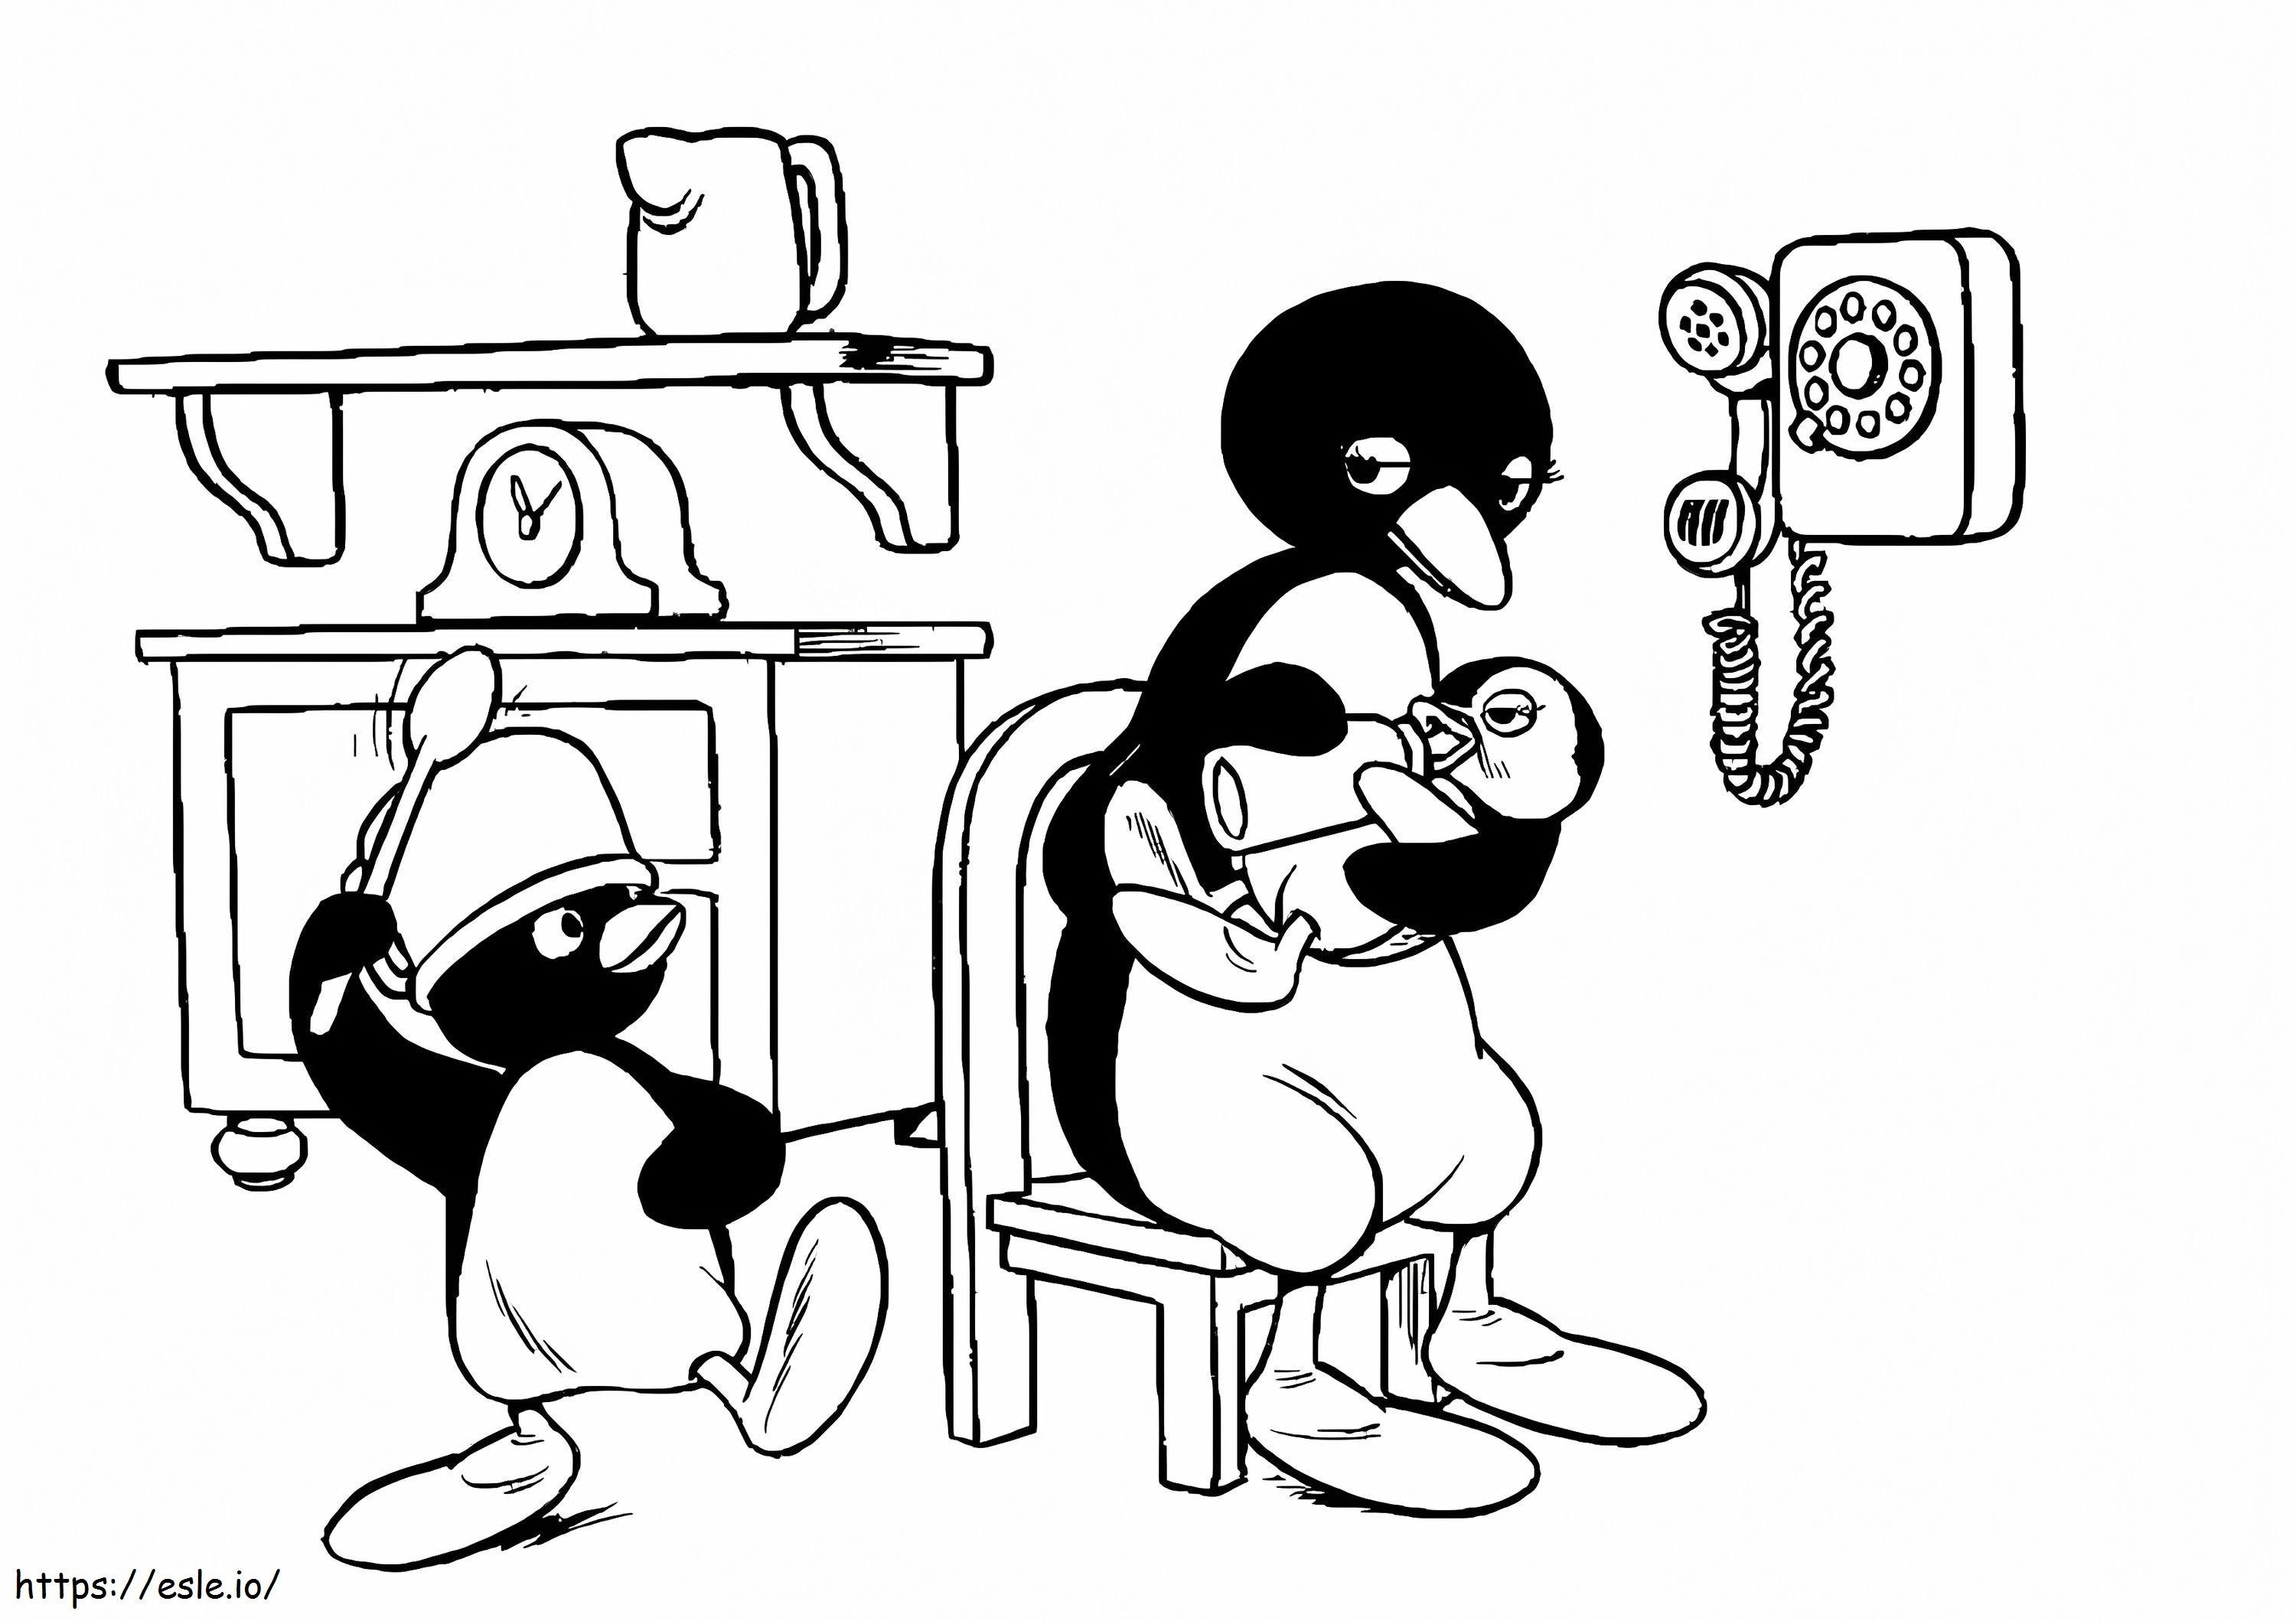 Pingu e mãe para colorir